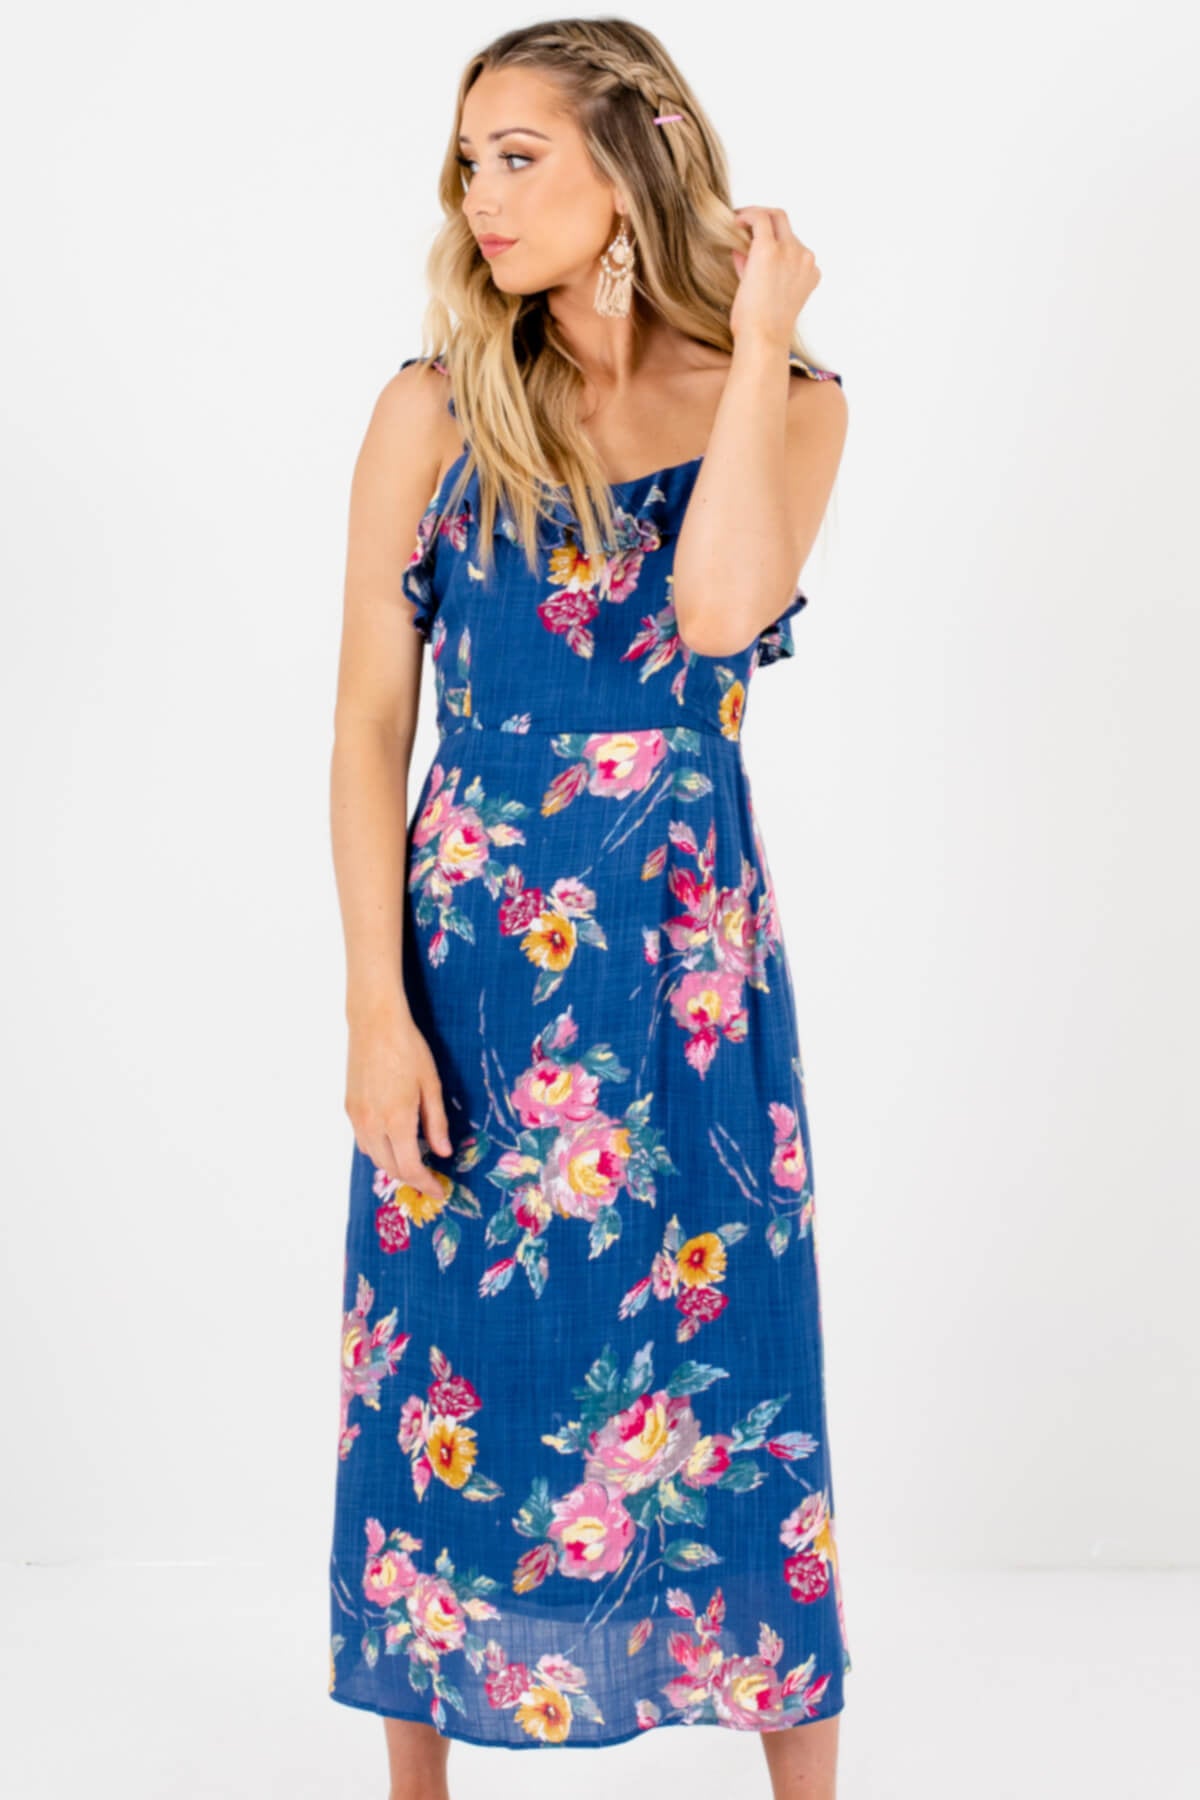 Blue Painted Floral Print Midi Dresses Affordable Online Boutique